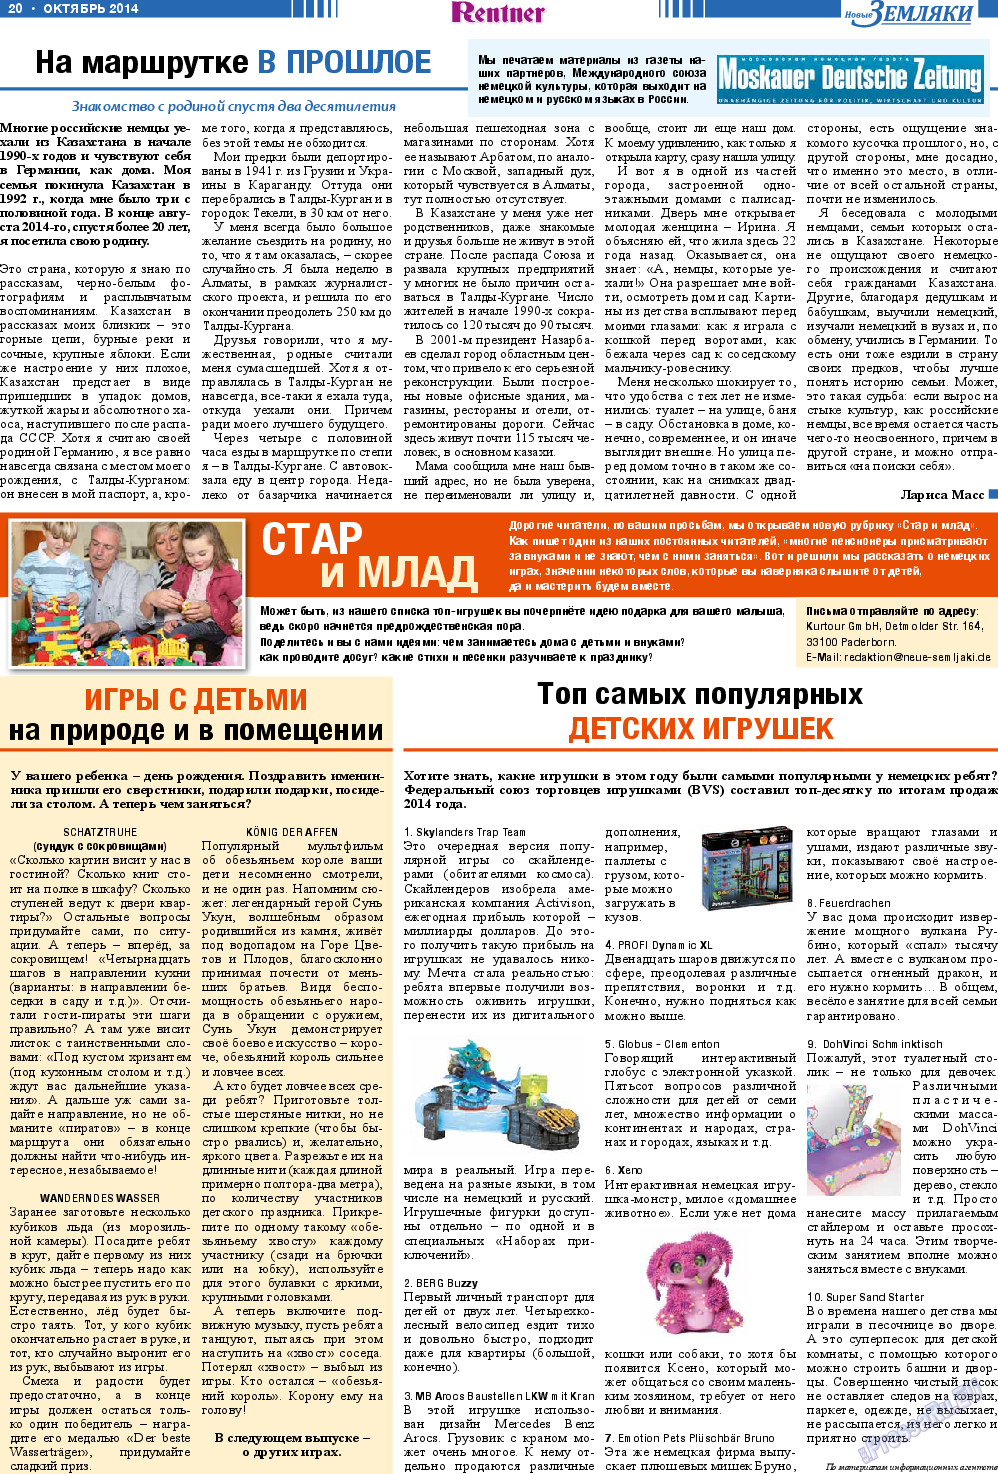 Новые Земляки, газета. 2014 №10 стр.20